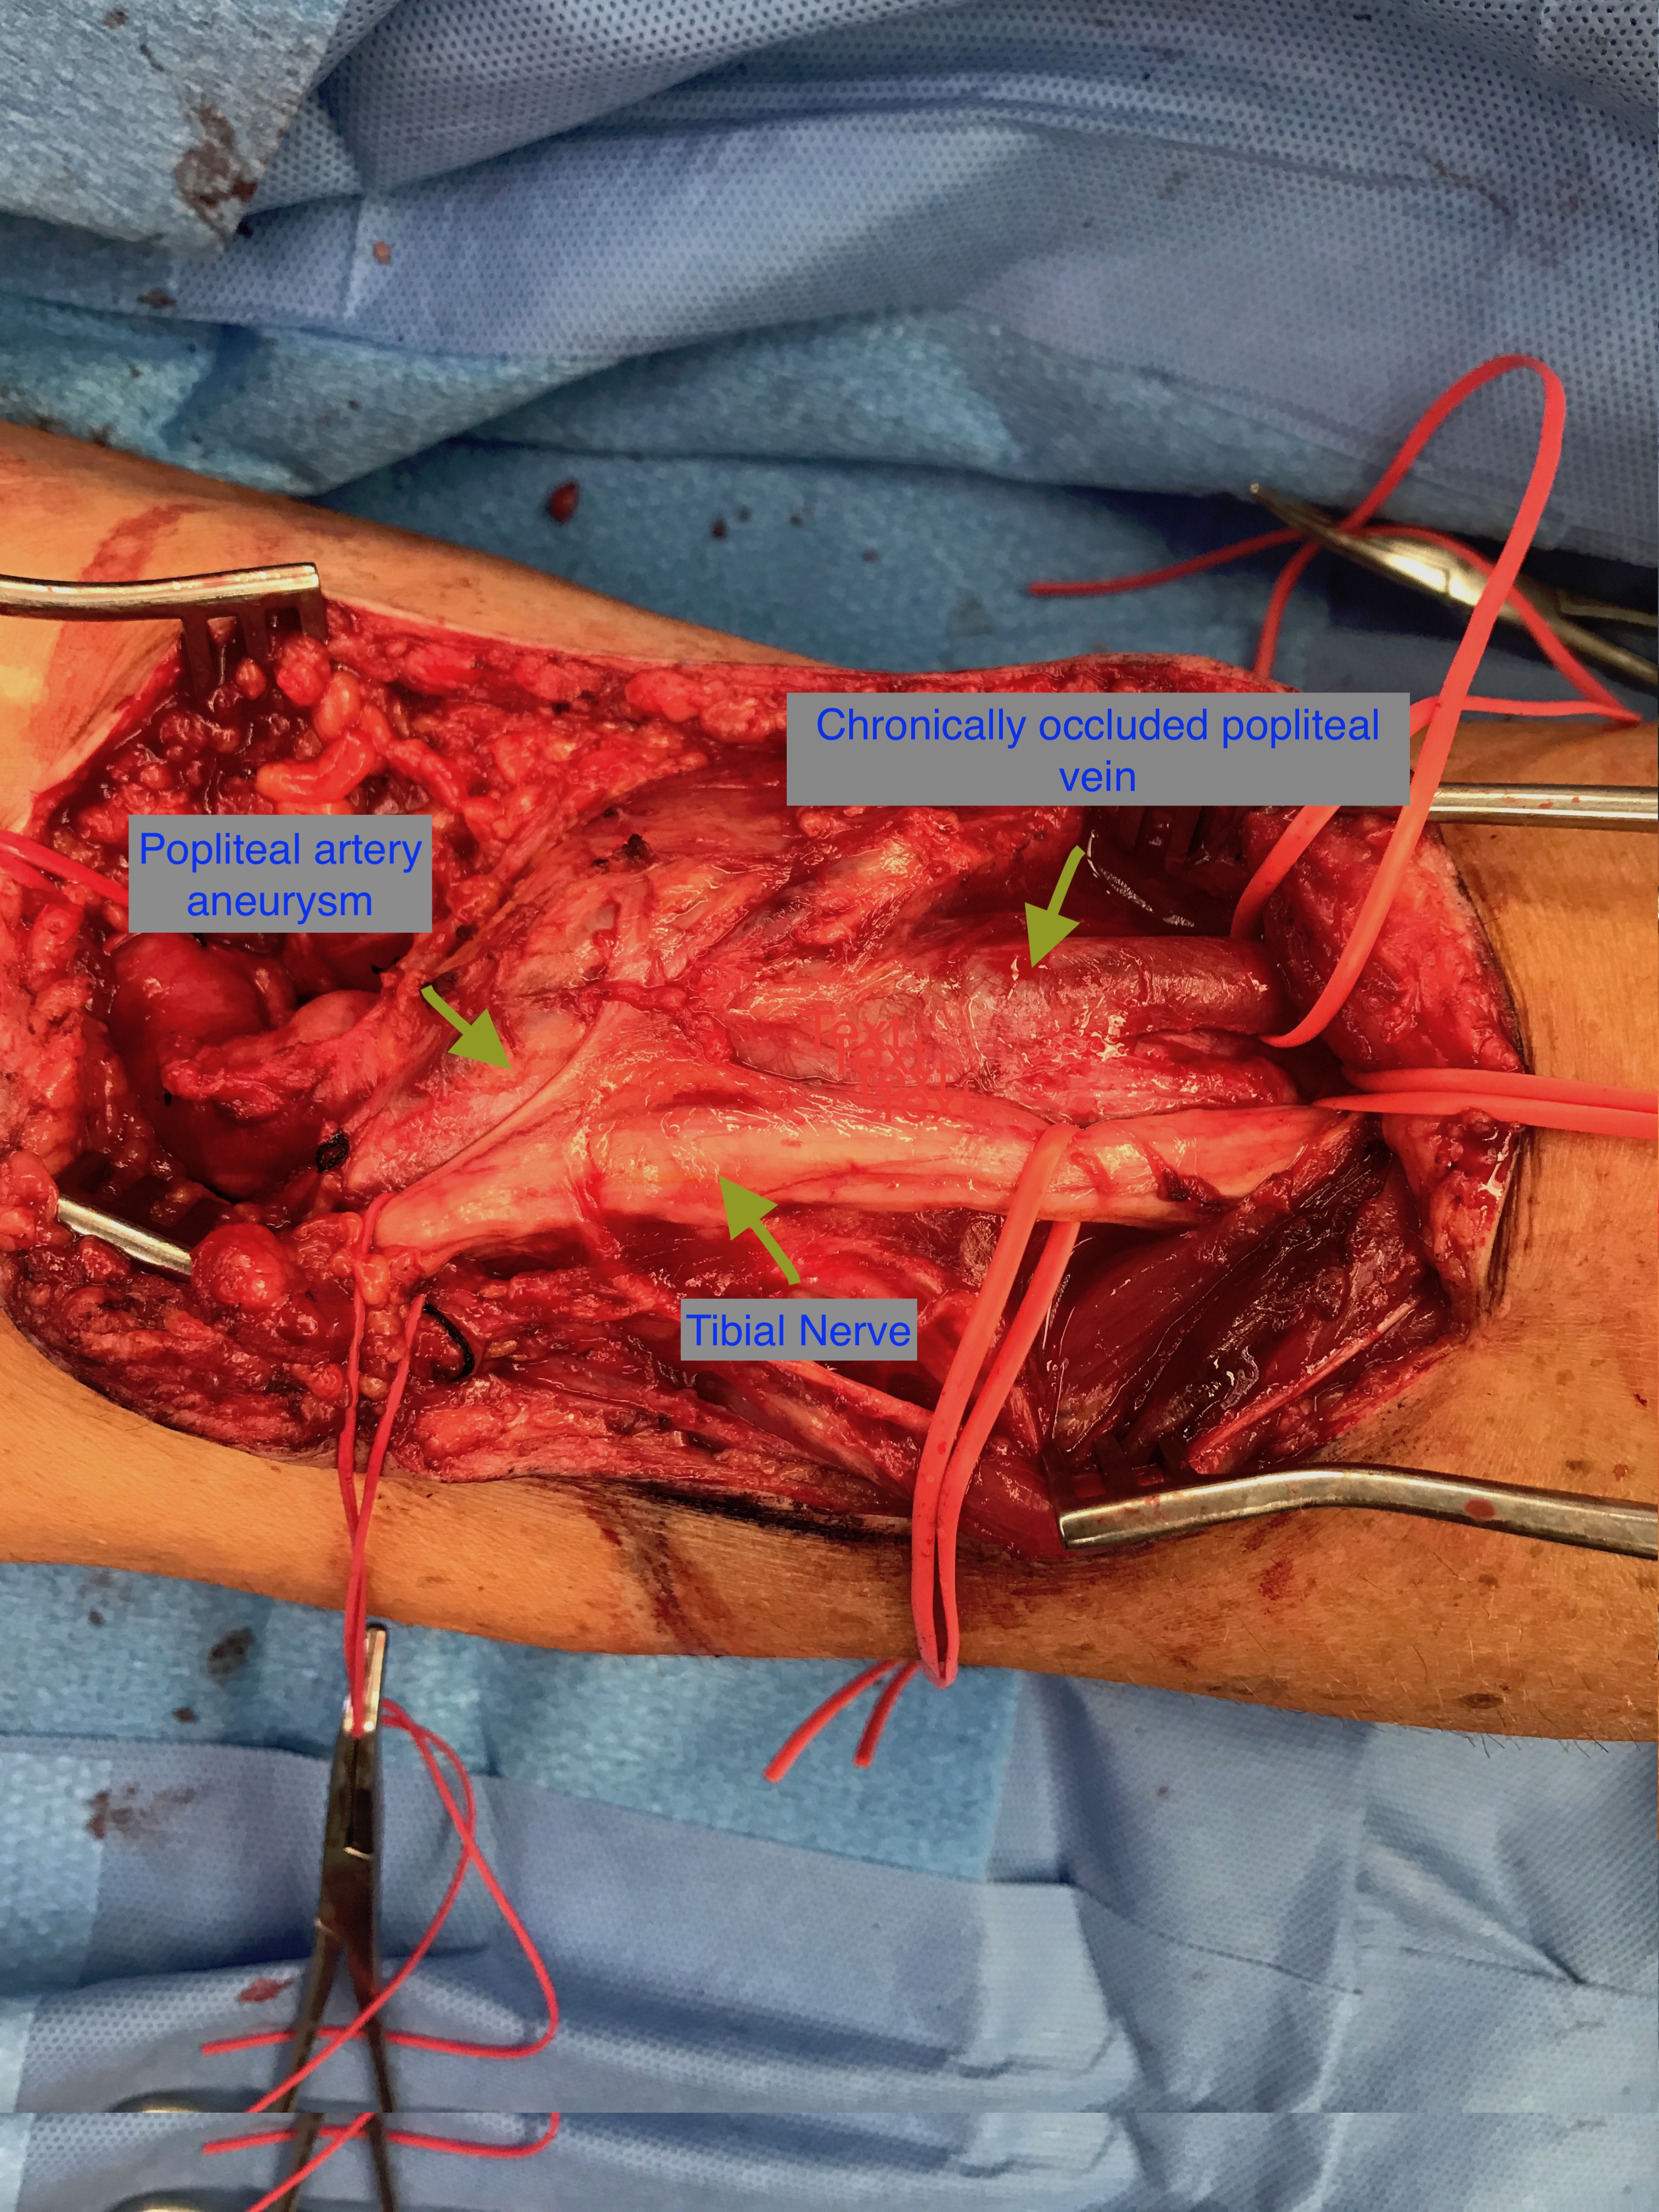 Intra-op popliteal artery aneurysm repair, posterior approach